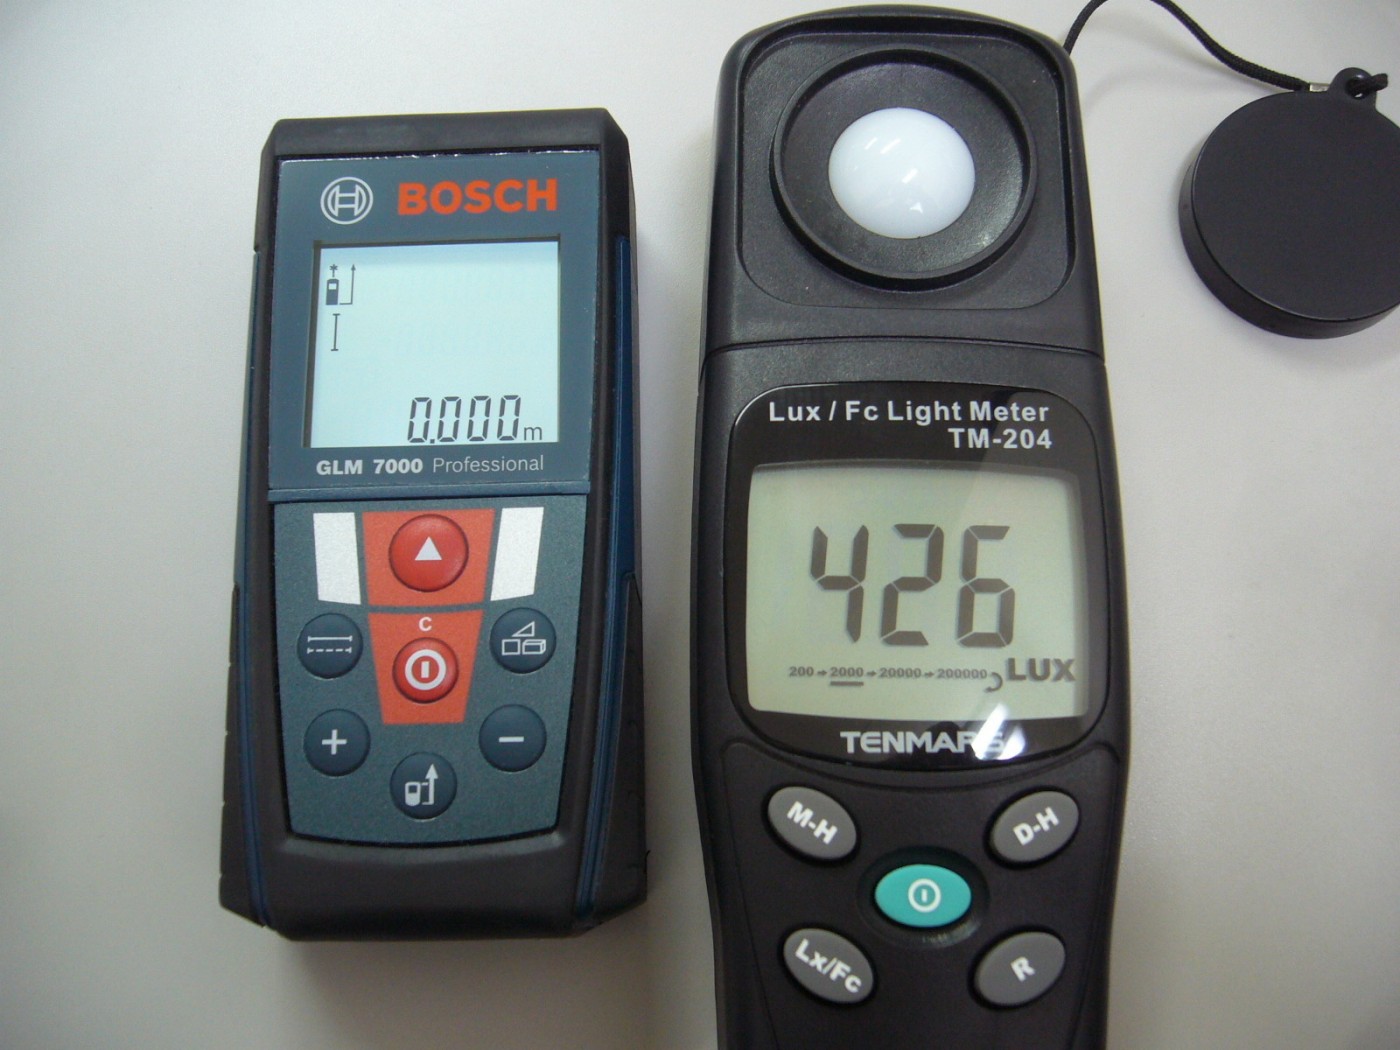 距離計と照度測定器